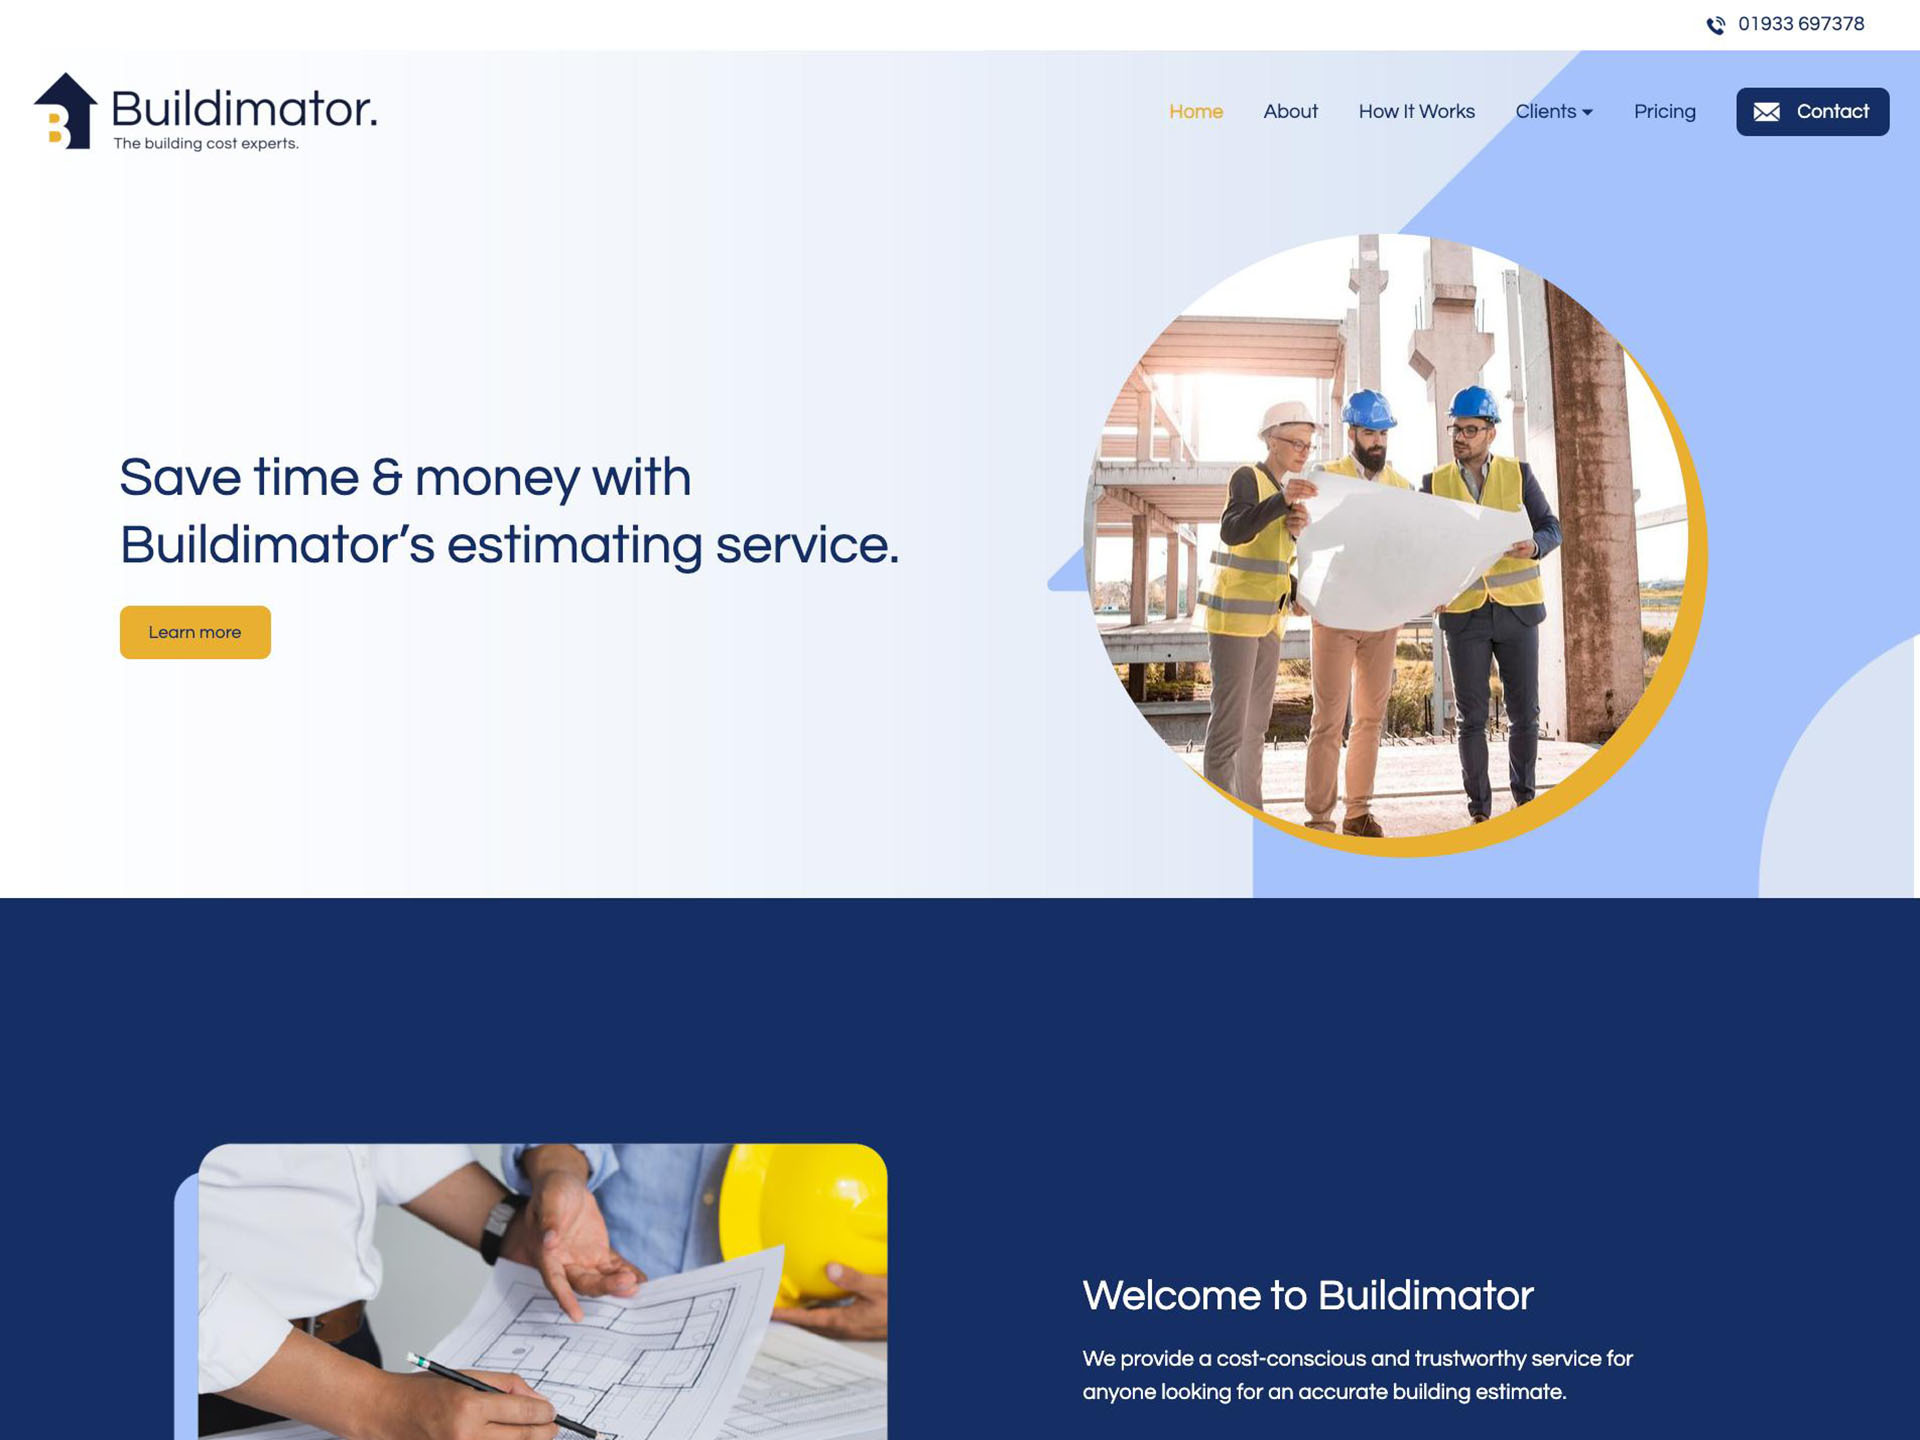 Buildimator website design by it'seeze